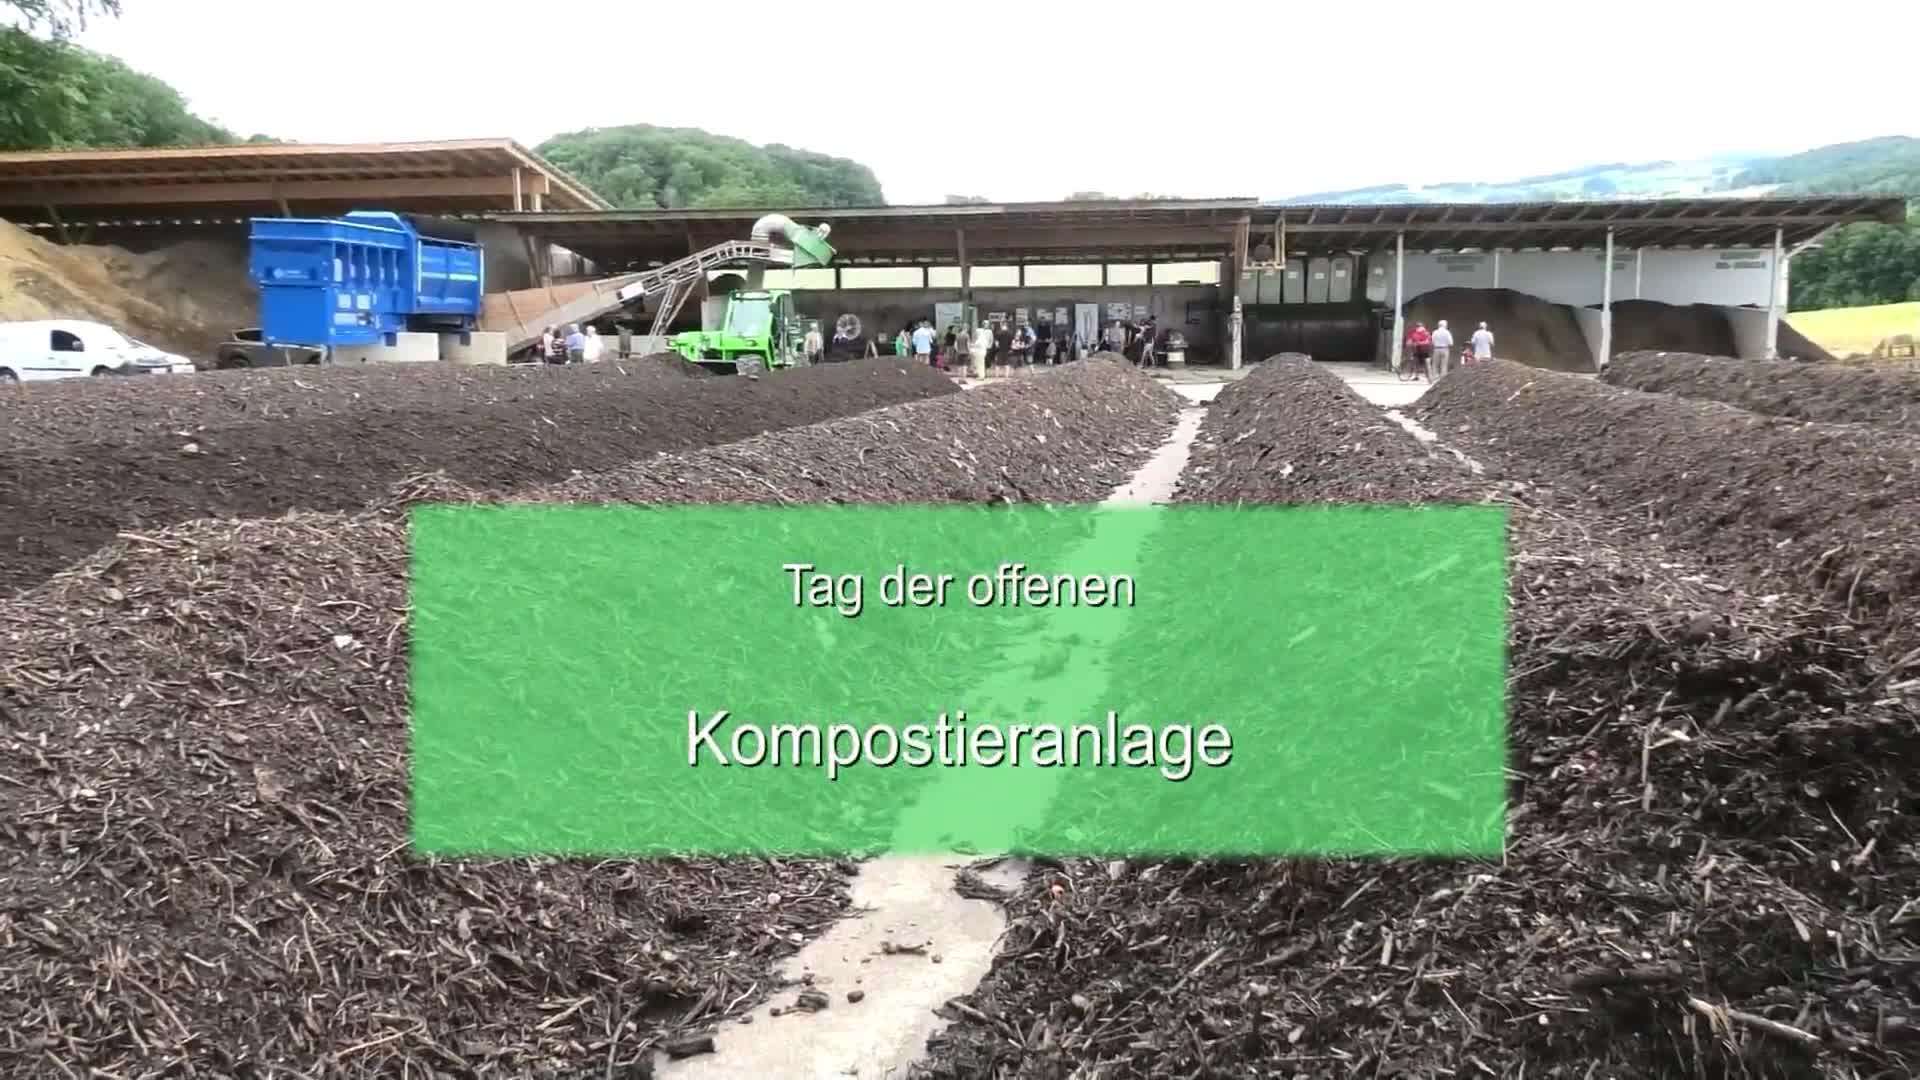 Tag der offenen Kompostieranlage